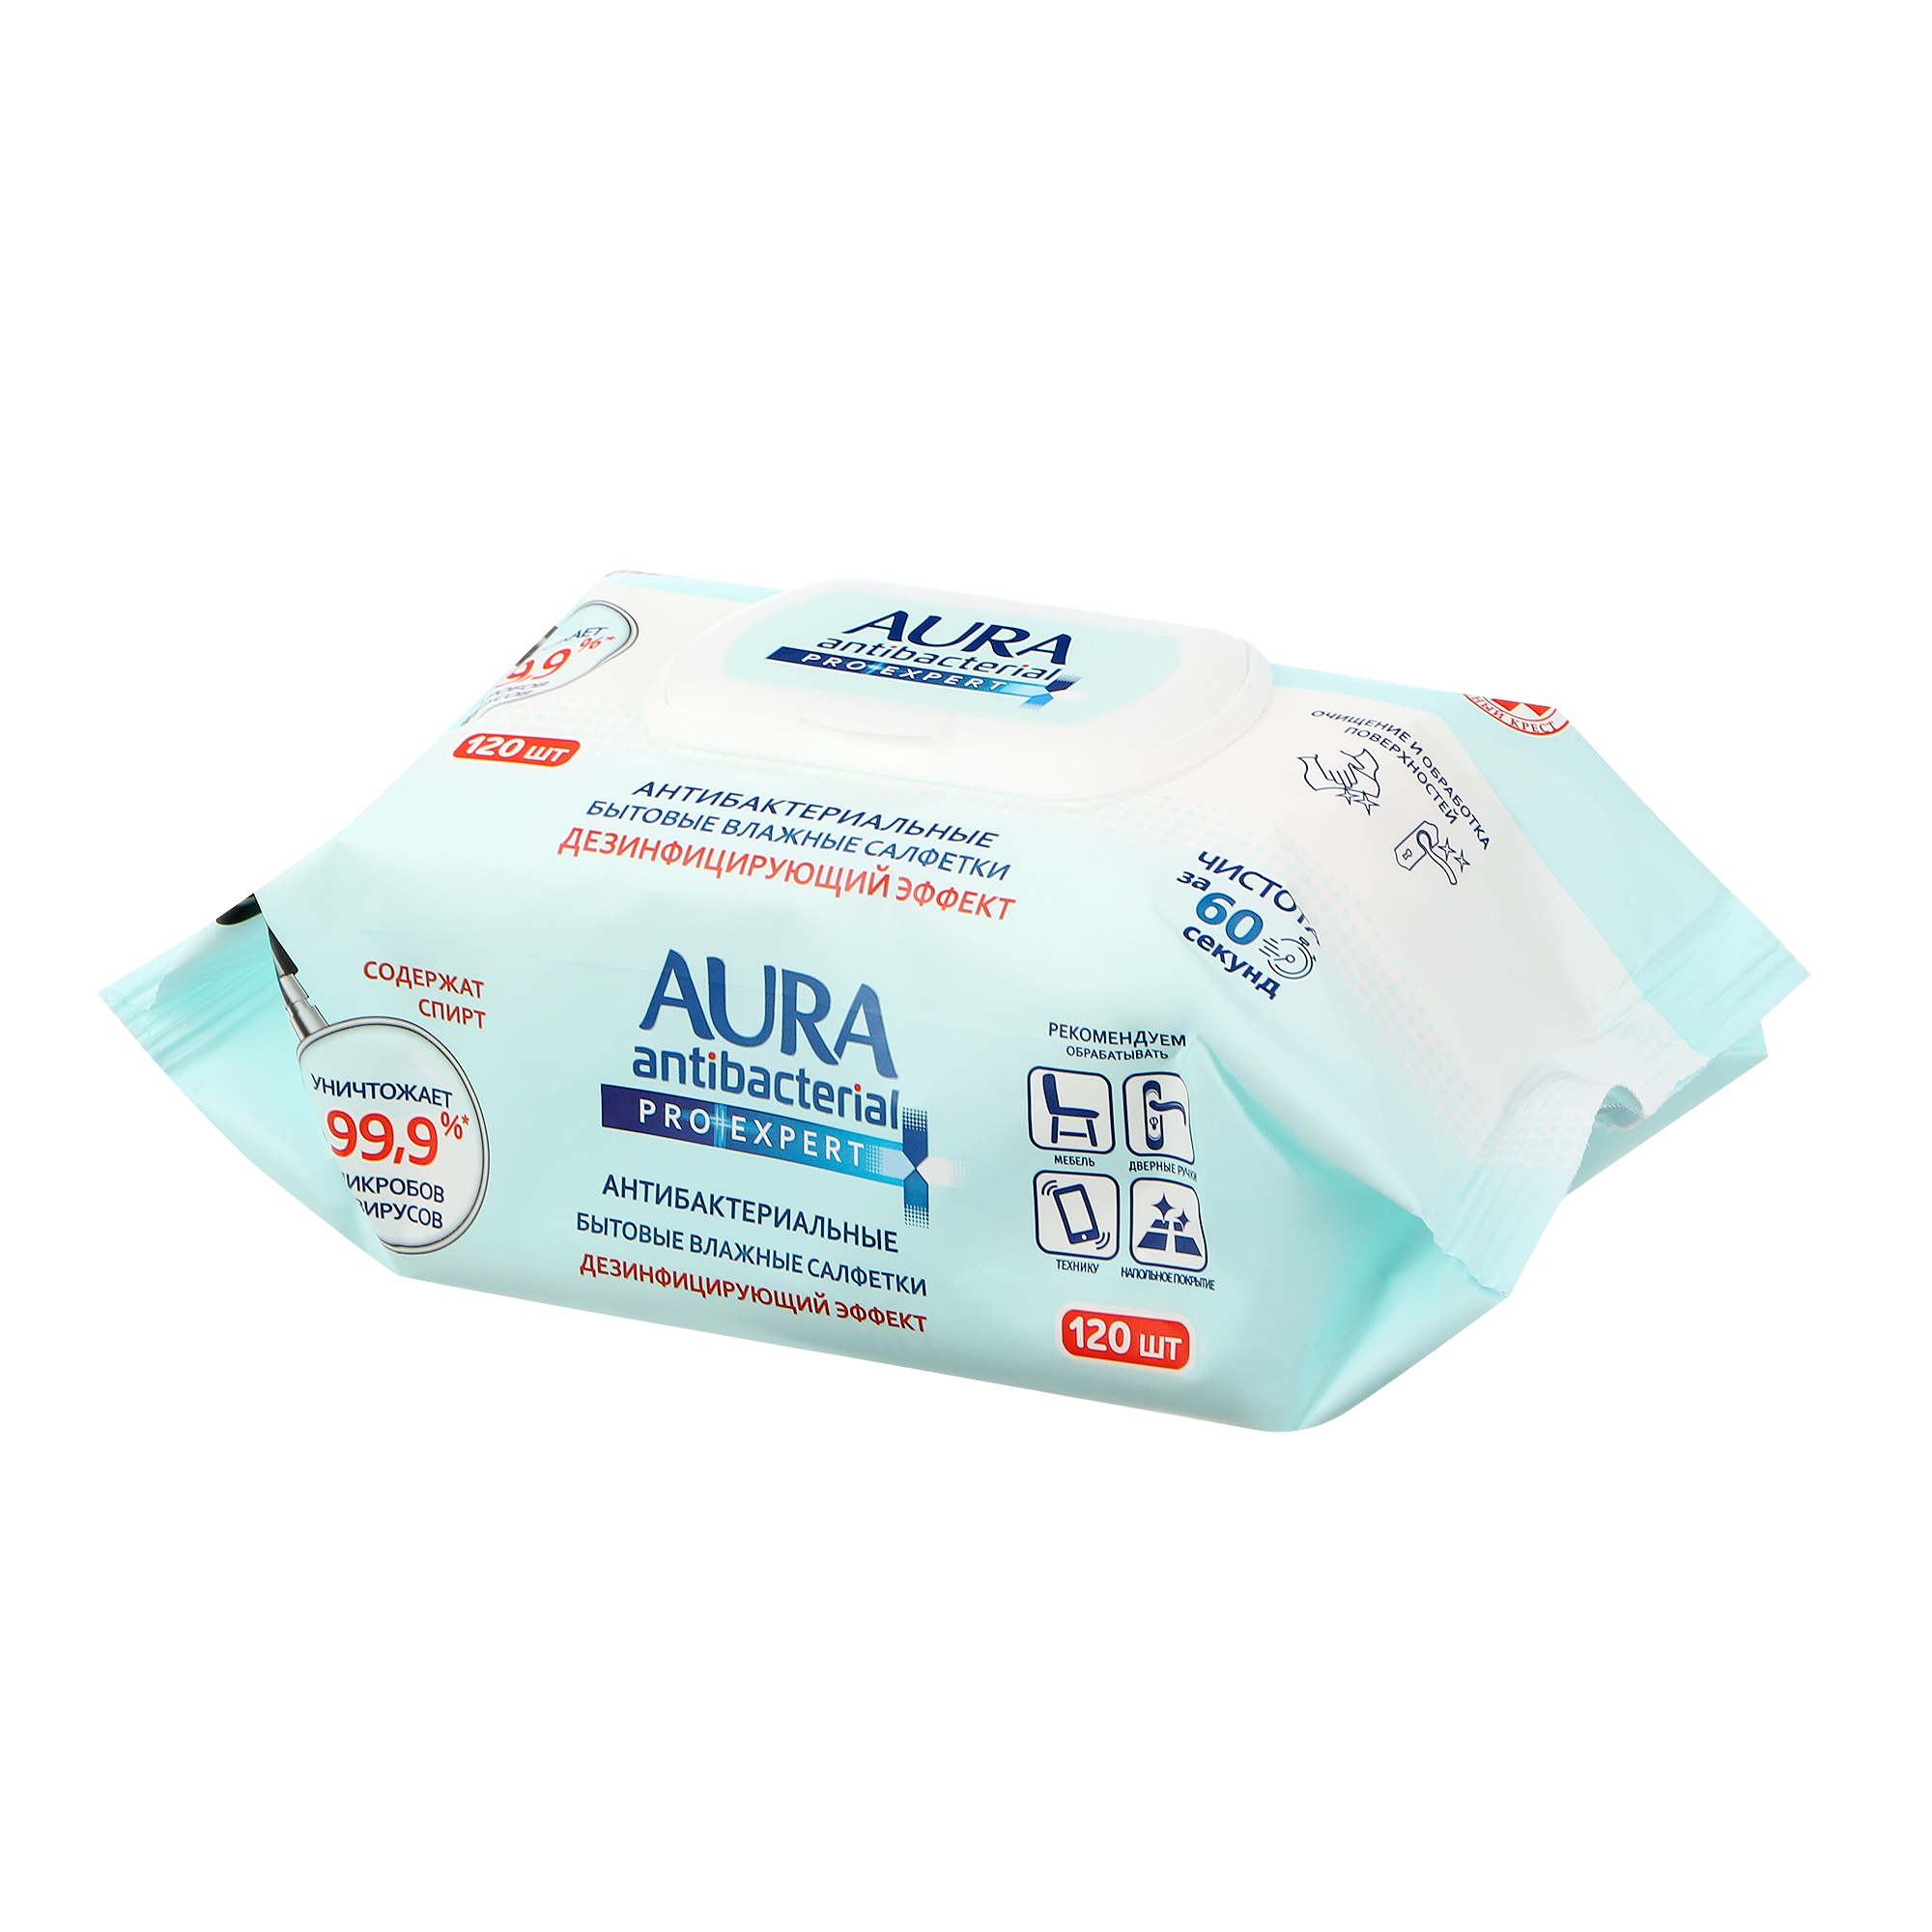 Салфетки Aura big-pack с крышкой 120 шт влажные салфетки aura дезинфицирующие pro expert big pack 24 шт